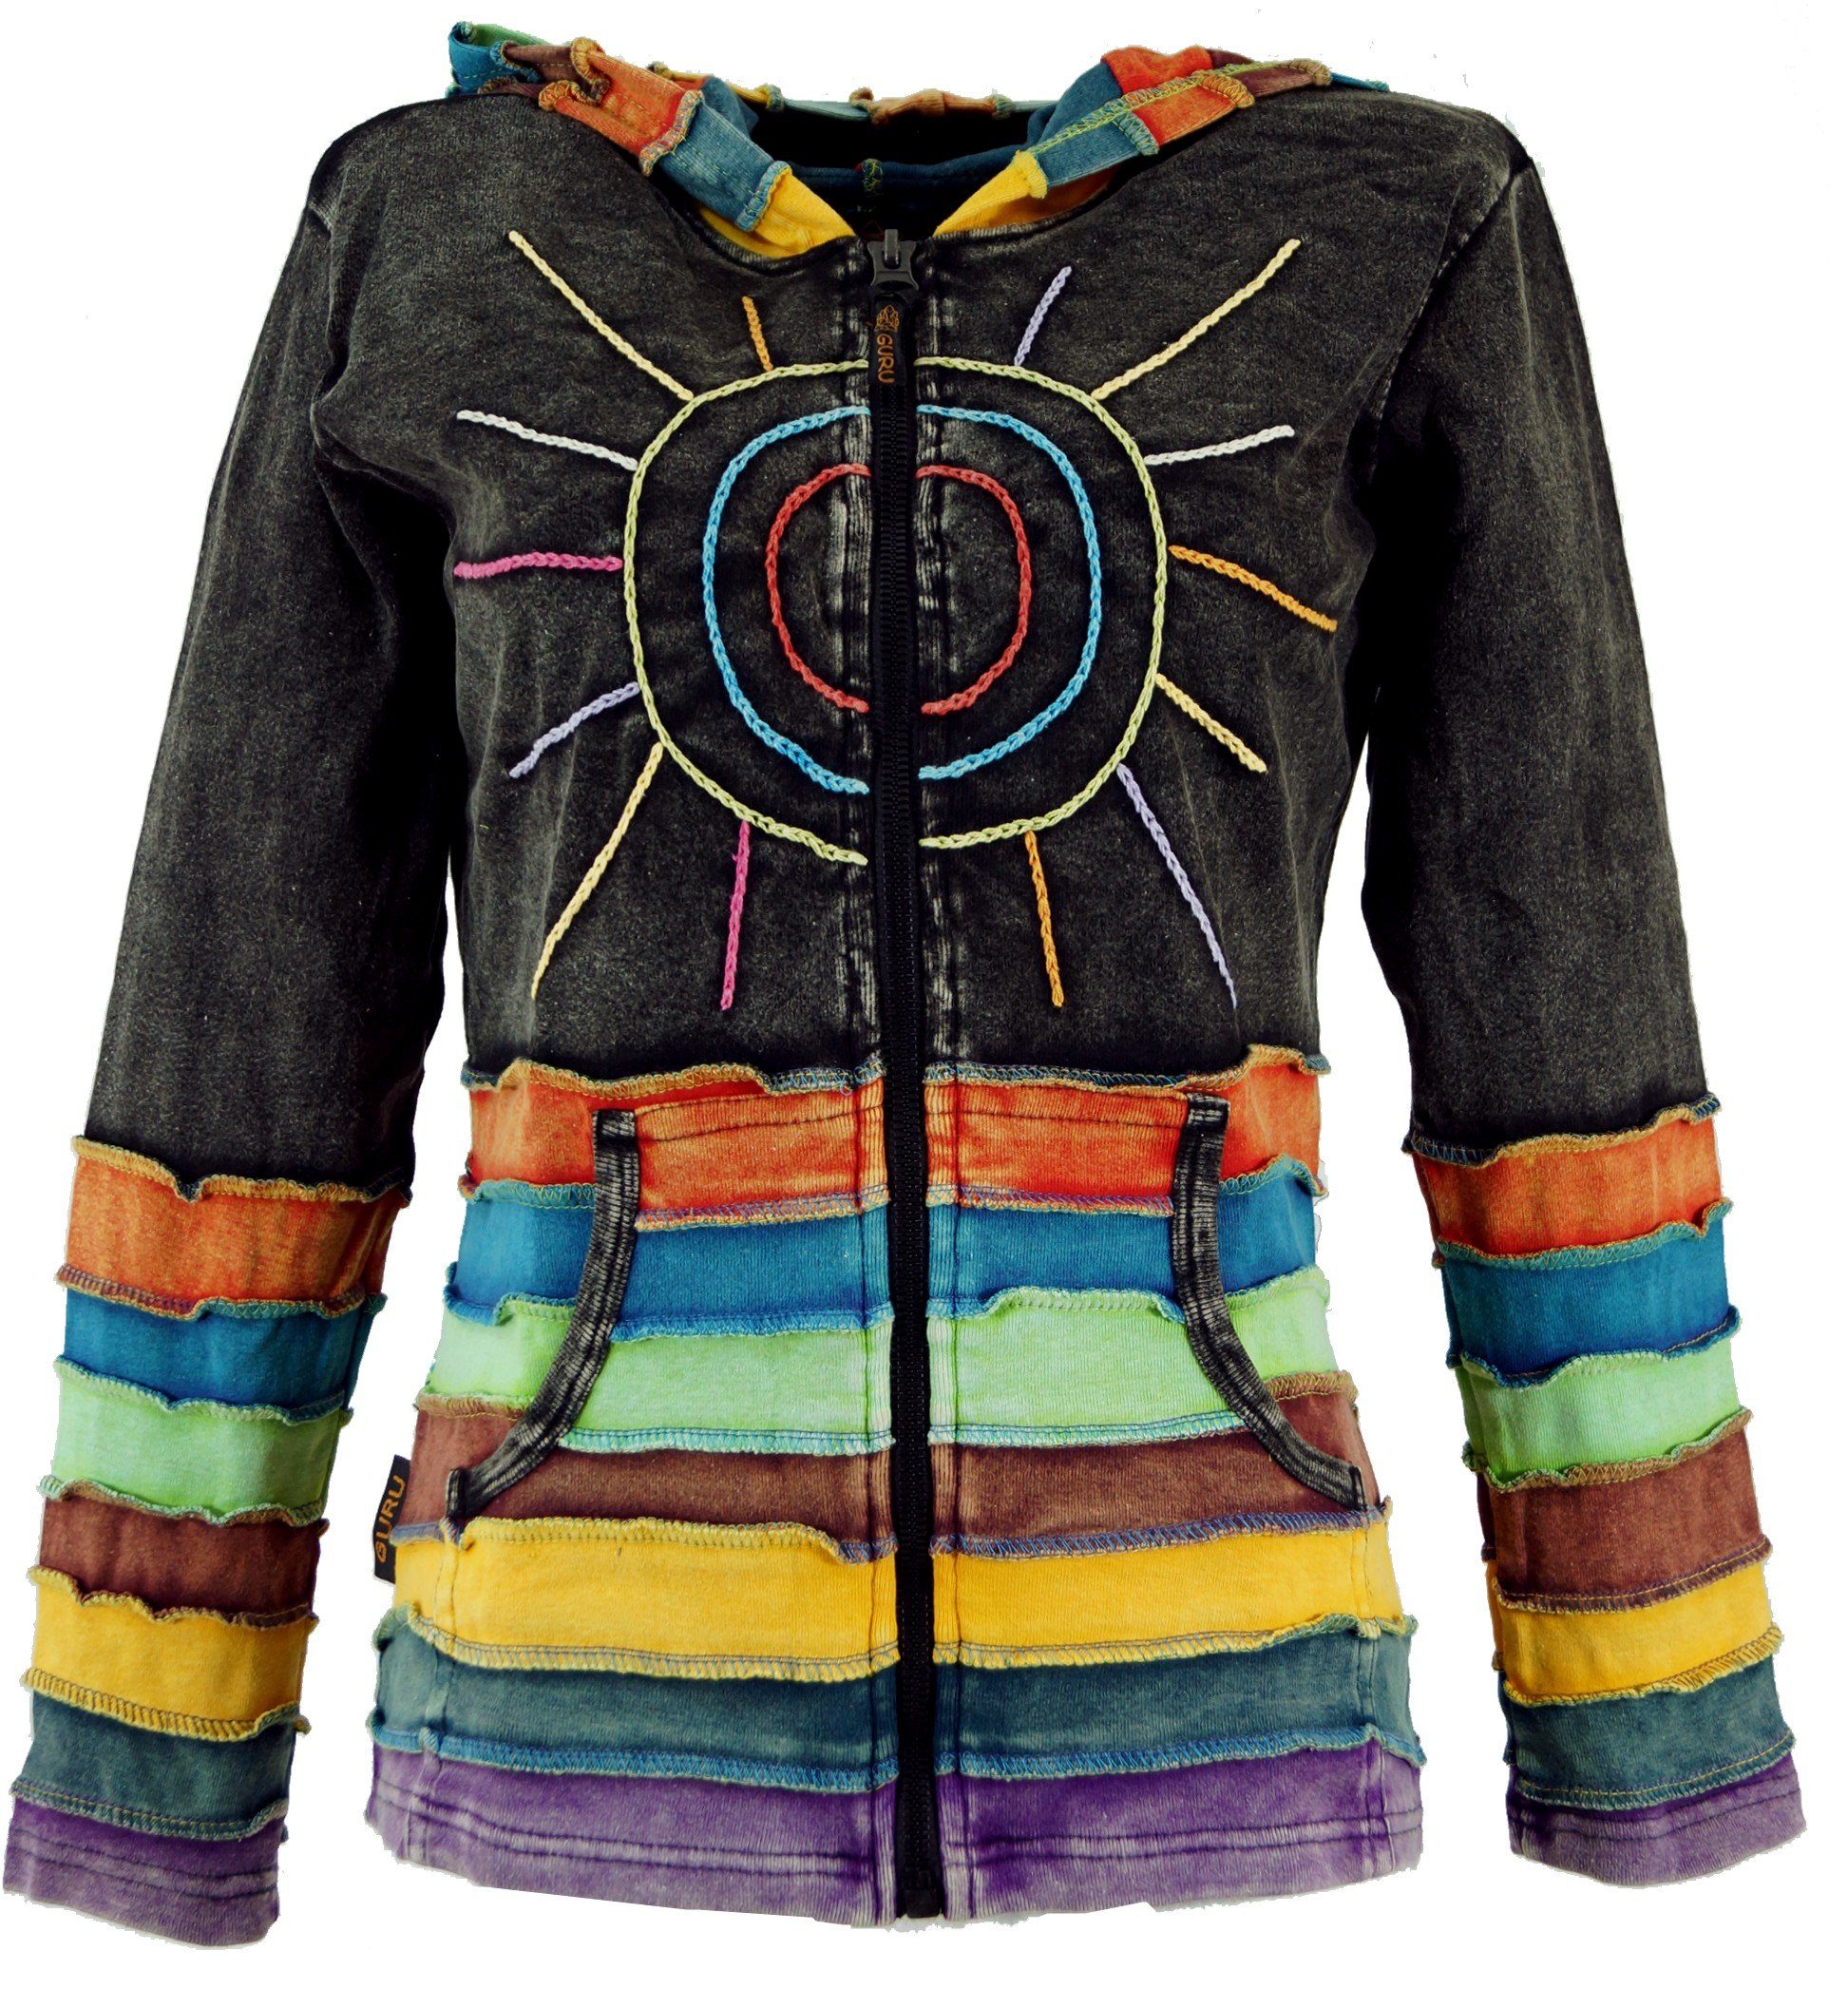 Guru-Shop Langjacke mit Regenbogenjacke, Zipfelkapuze Jacke Bekleidung schwarz alternative 